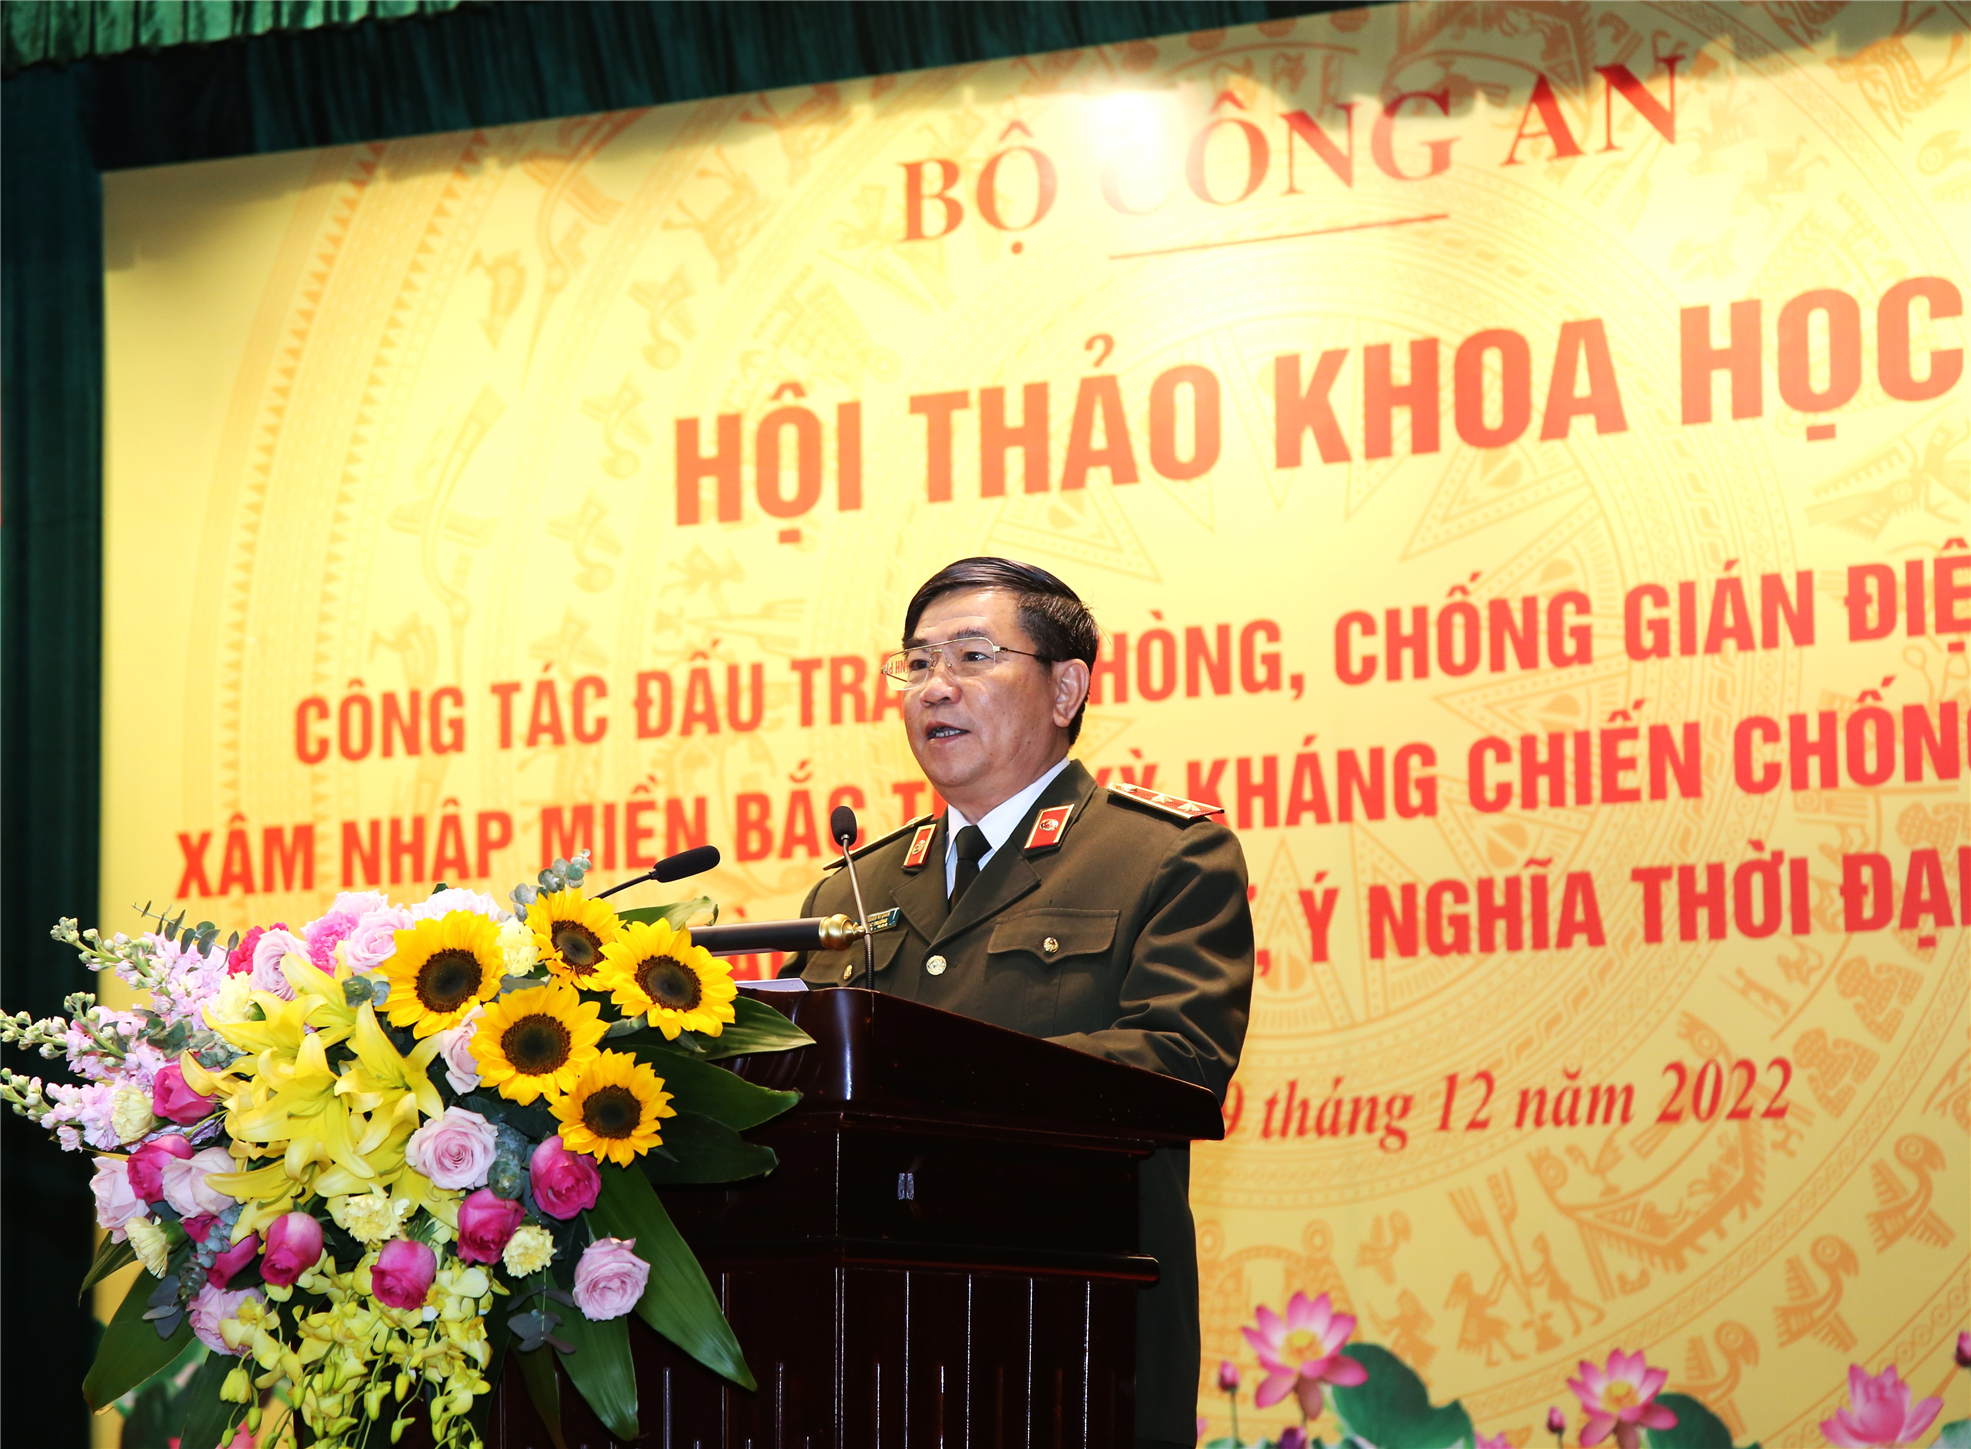 Trung tướng Trần Vi Dân, Cục trưởng Cục Khoa học, Chiến lược và Lịch sử Công an phát biểu đề dẫn Hội thảo.